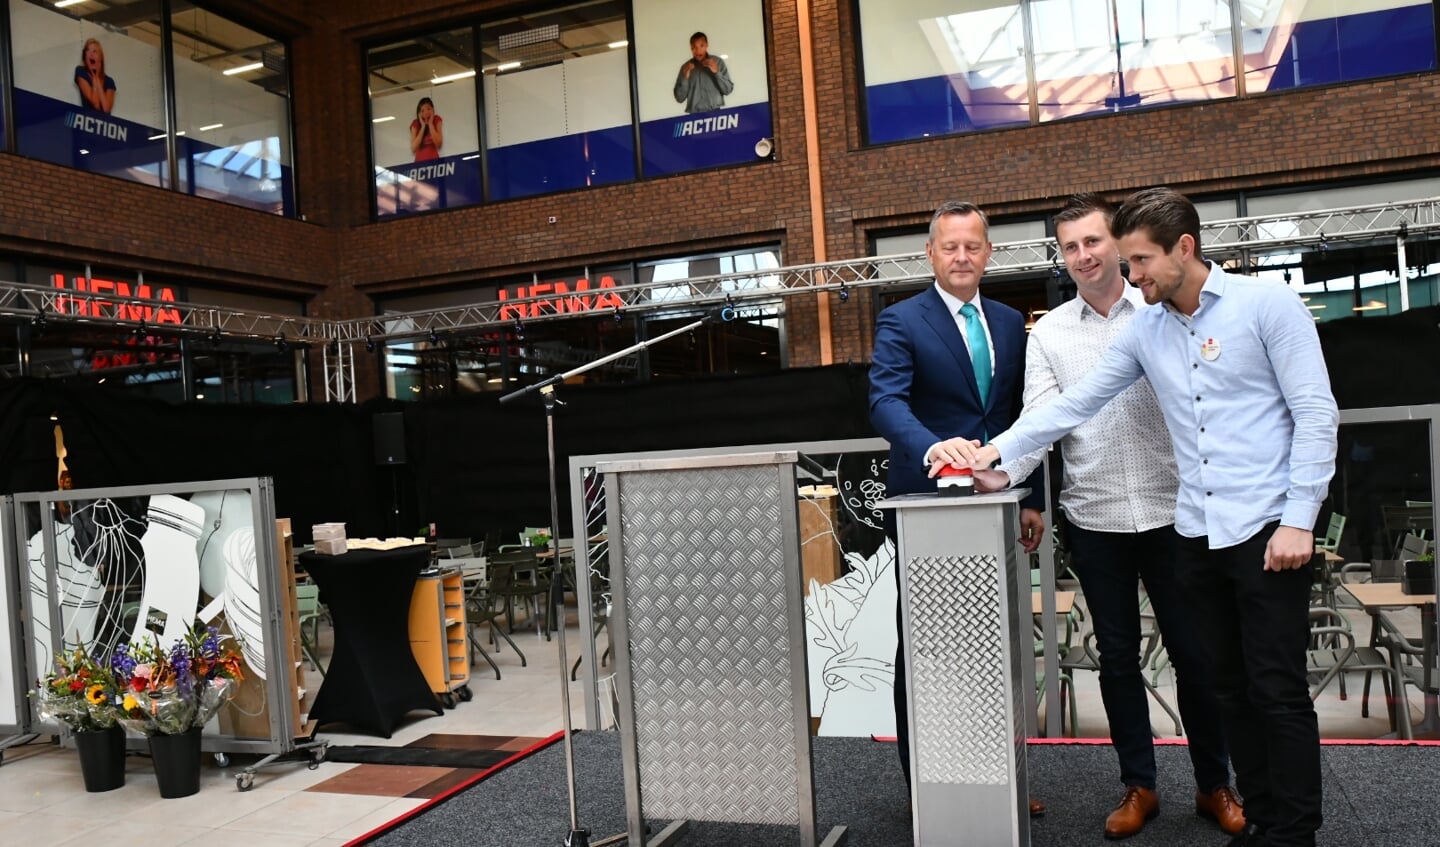 Commissaris van de Koning Arthur van Dijk verzorgt met Kevin in Sven van der Weijden de heropening van de verbouwde HEMA.